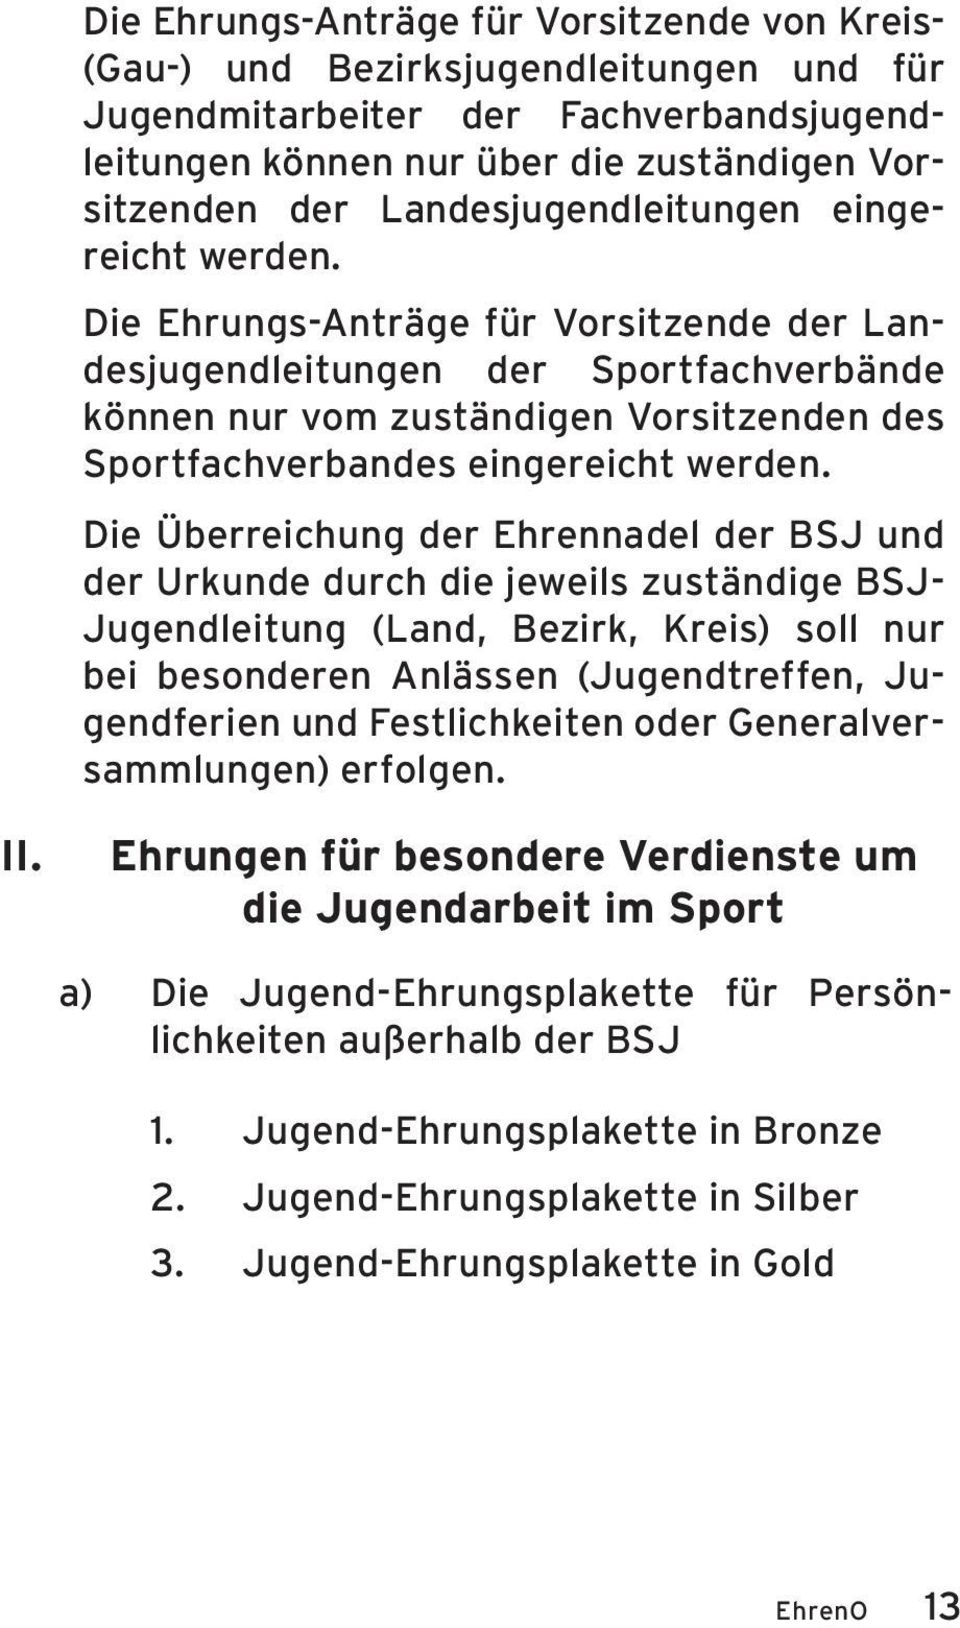 Die Ehrungs-Anträge für Vorsitzende der Landesjugendleitungen der Sportfachverbände können nur vom zuständigen Vorsitzenden des Sportfachverbandes eingereicht werden.